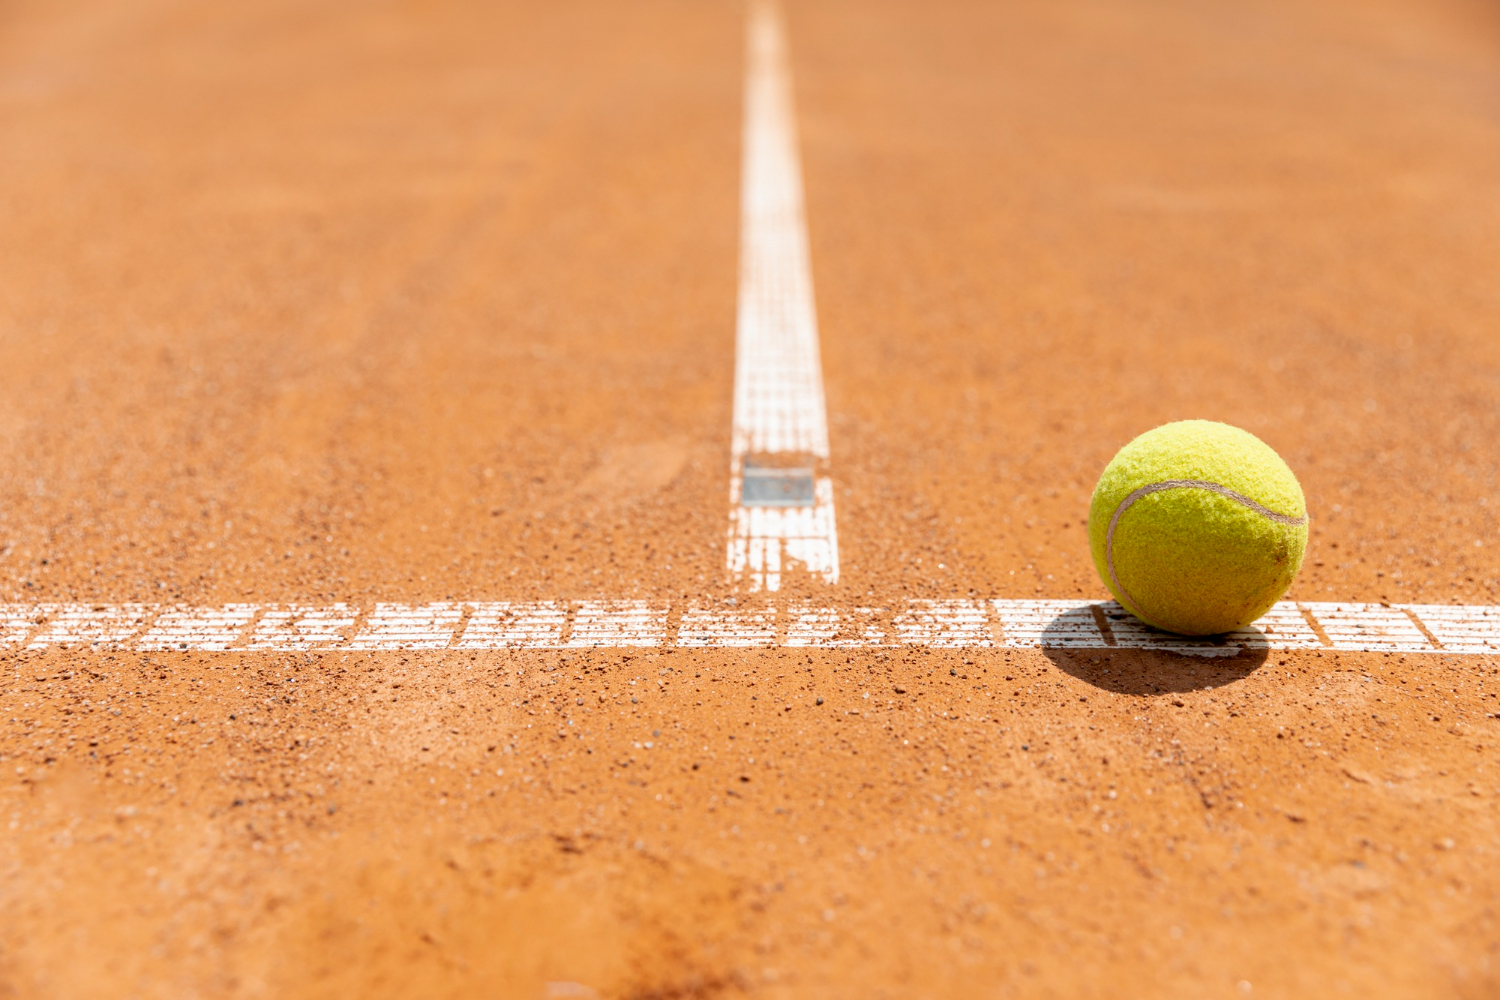 Os 5 melhores tênis infantil para jogar Tênis – Tênis Recreativo